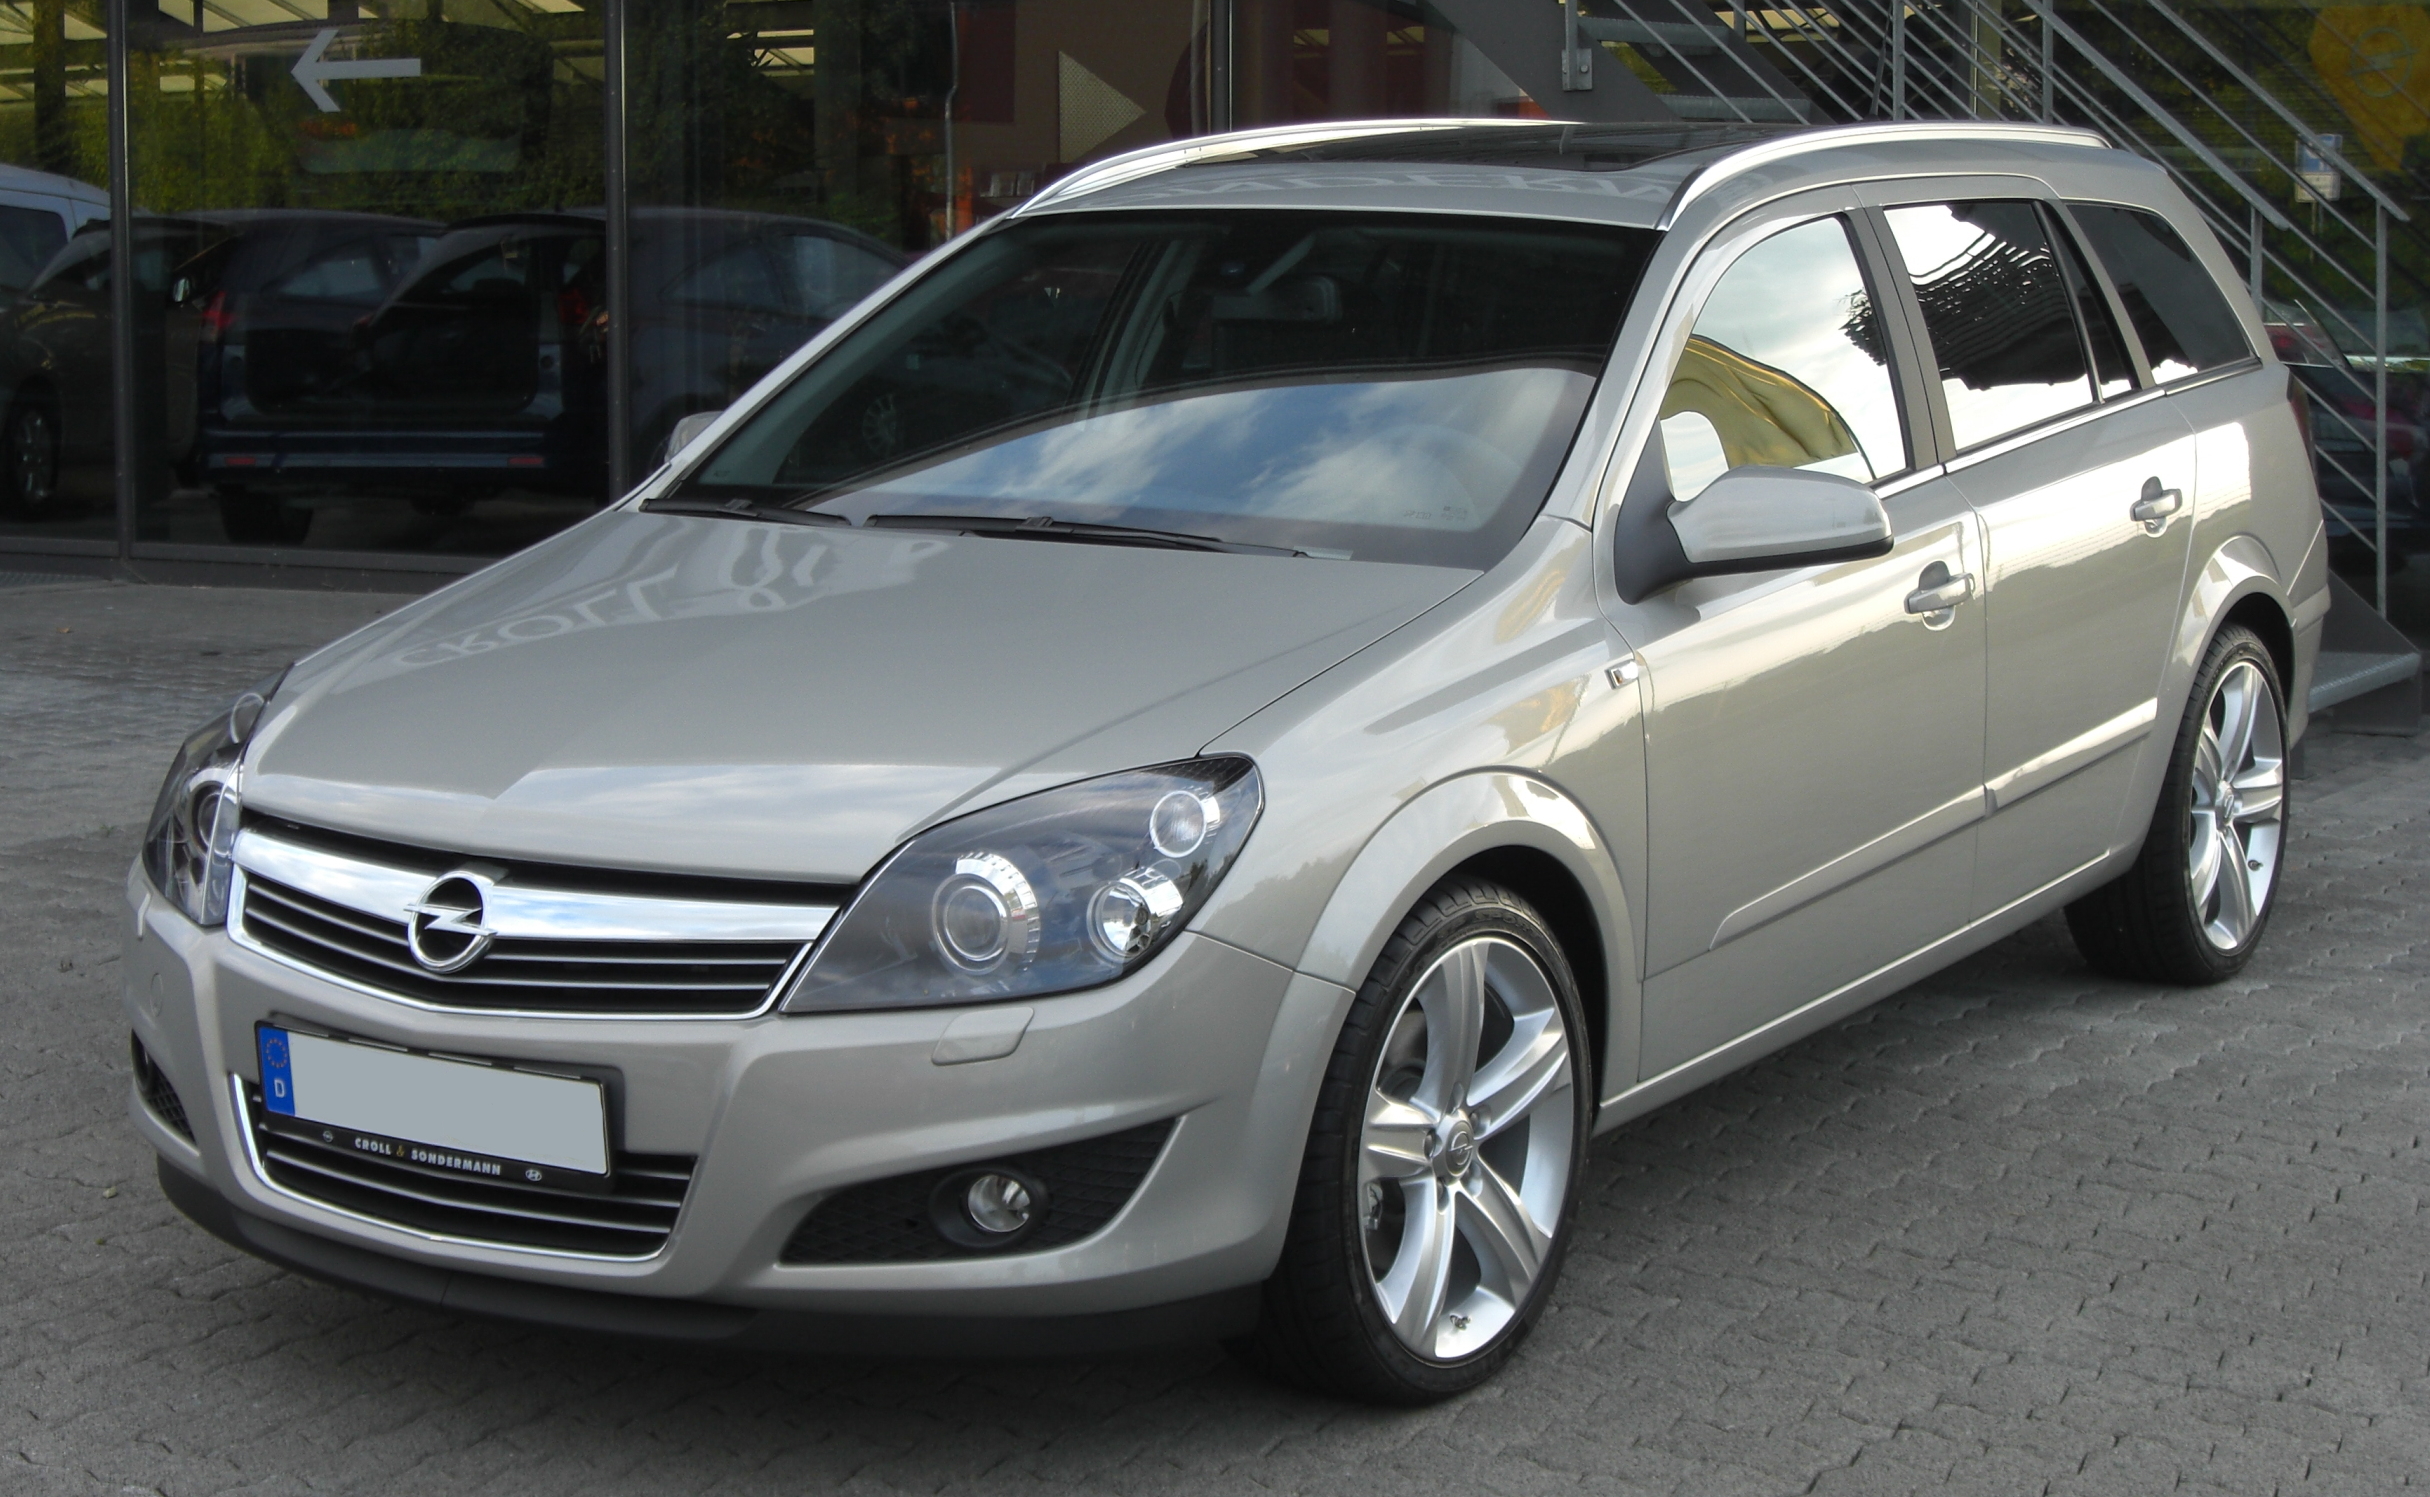 Opel astra 1.9 cdti caravan (40 comments) Views 10129 Rating 21